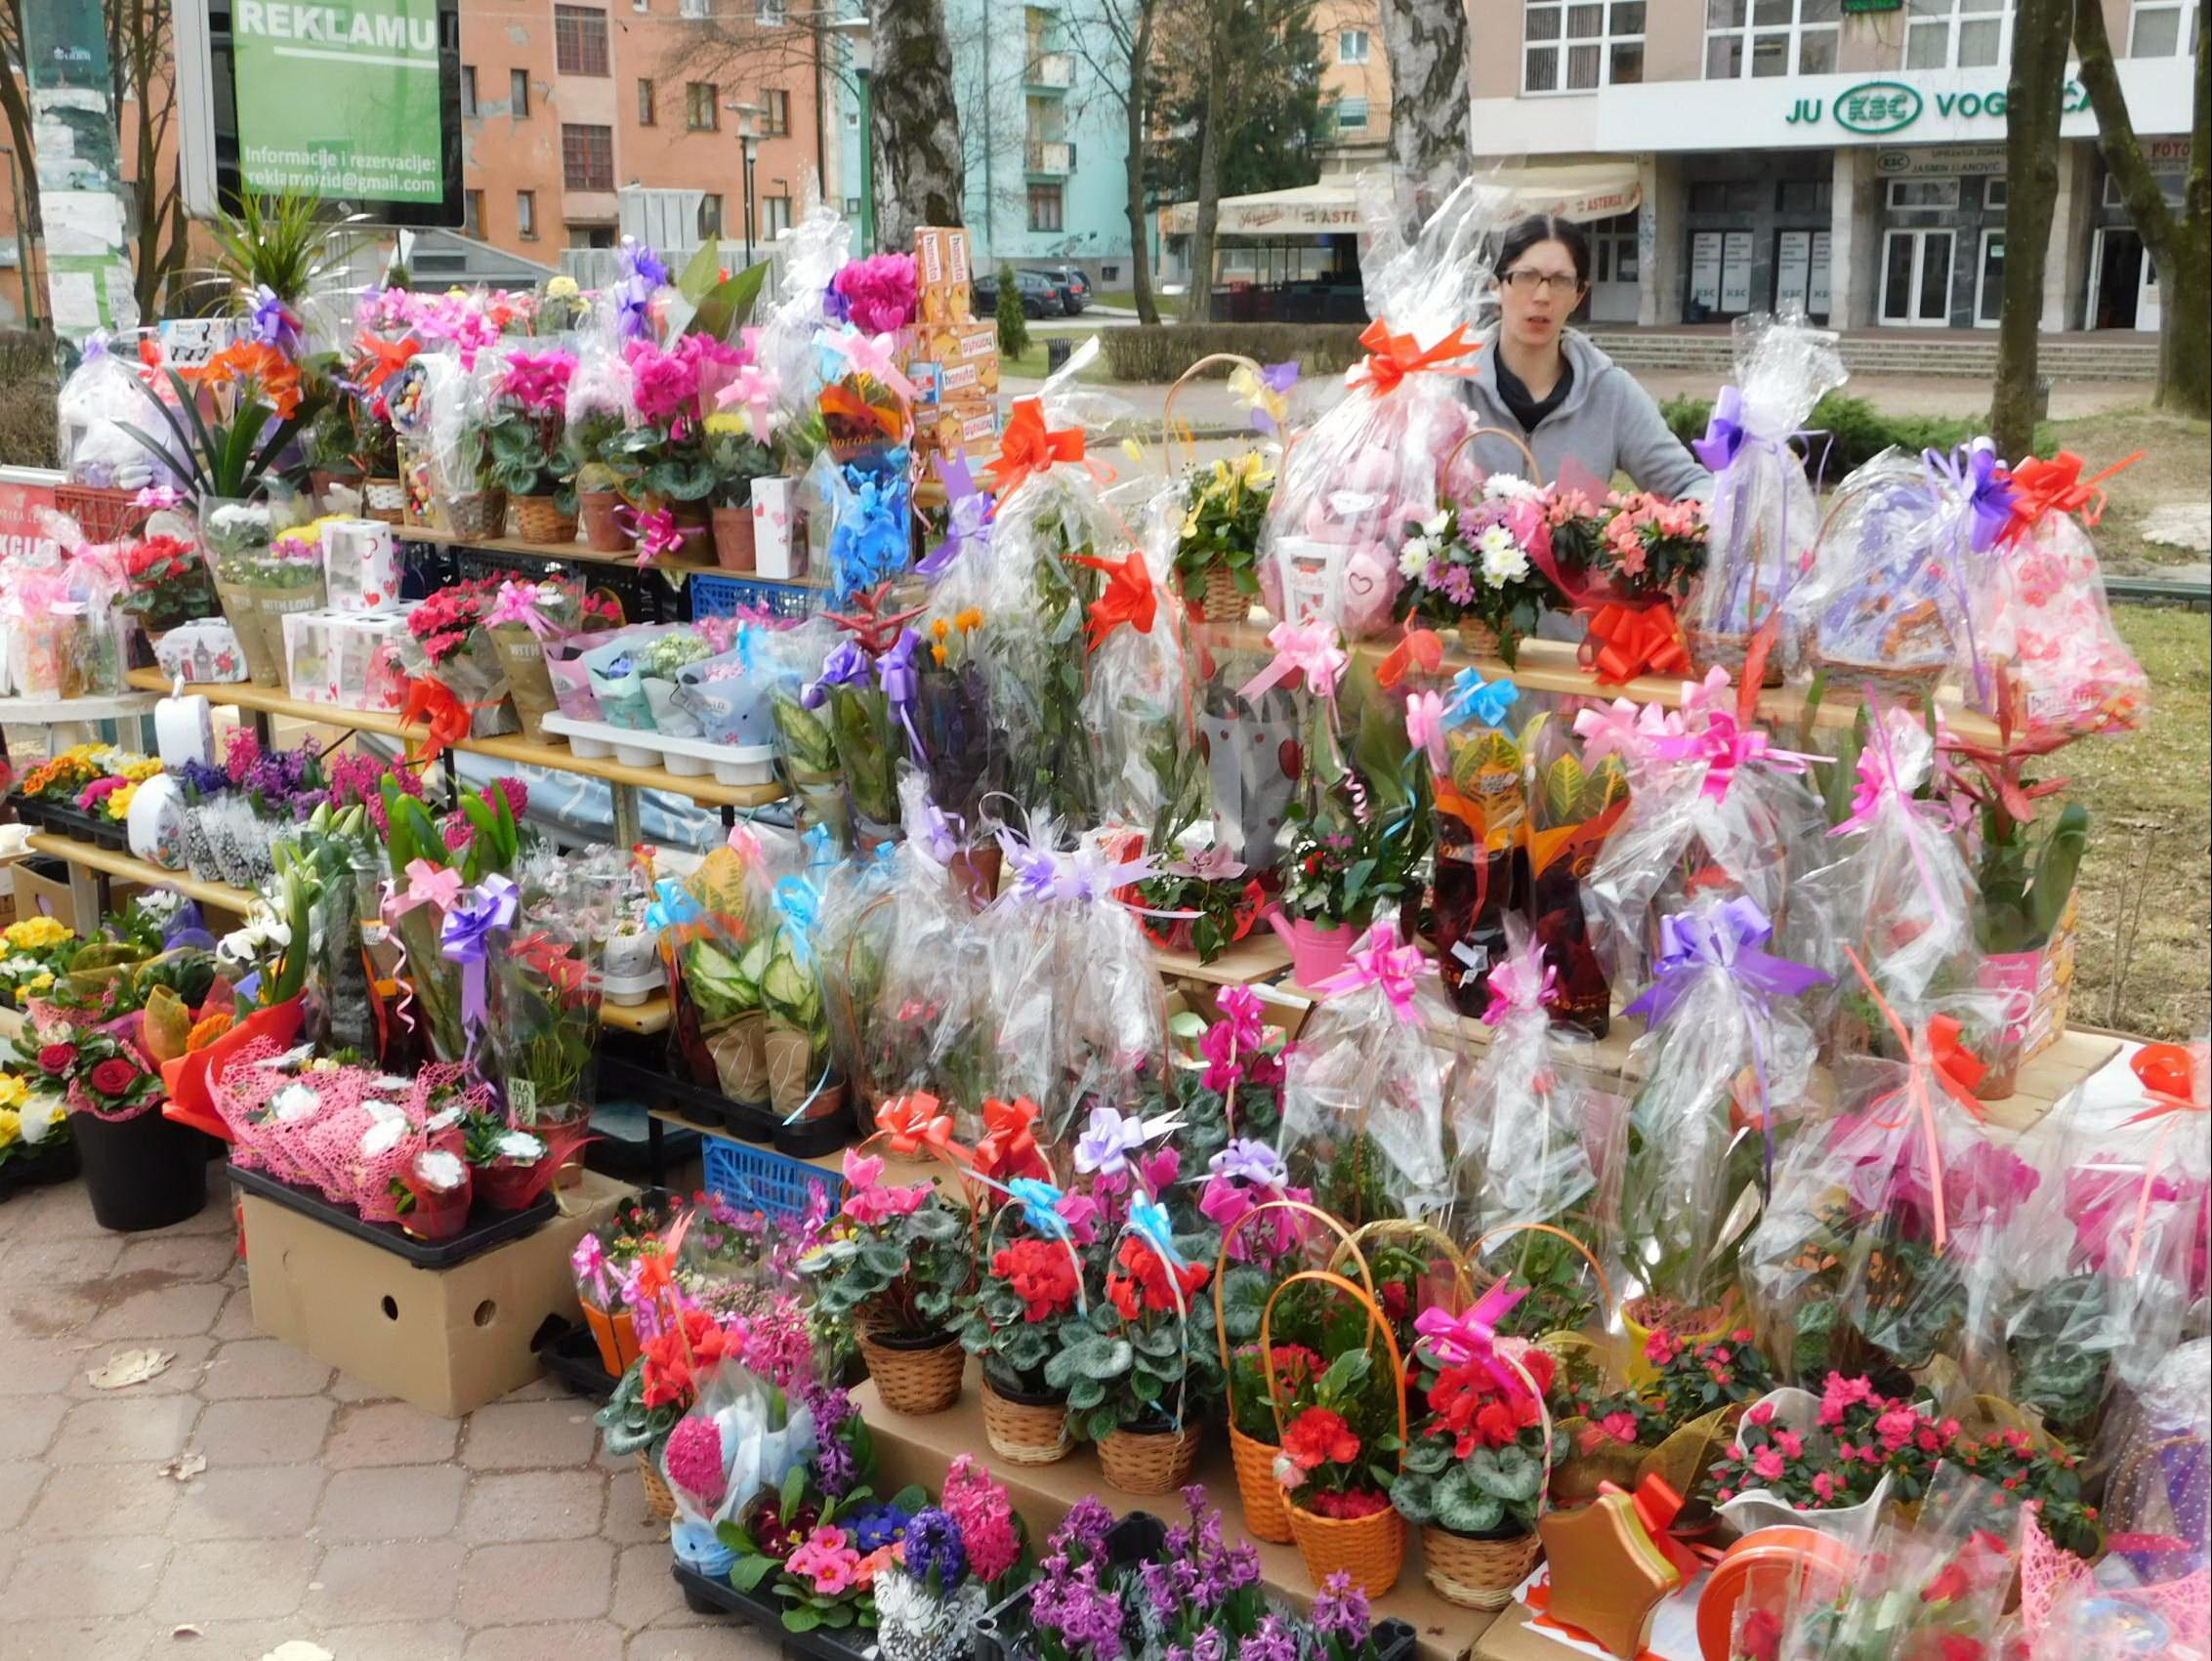 Povodom 8. marta, na ulicama Vogošće prodavači postavili stolove s cvijećem